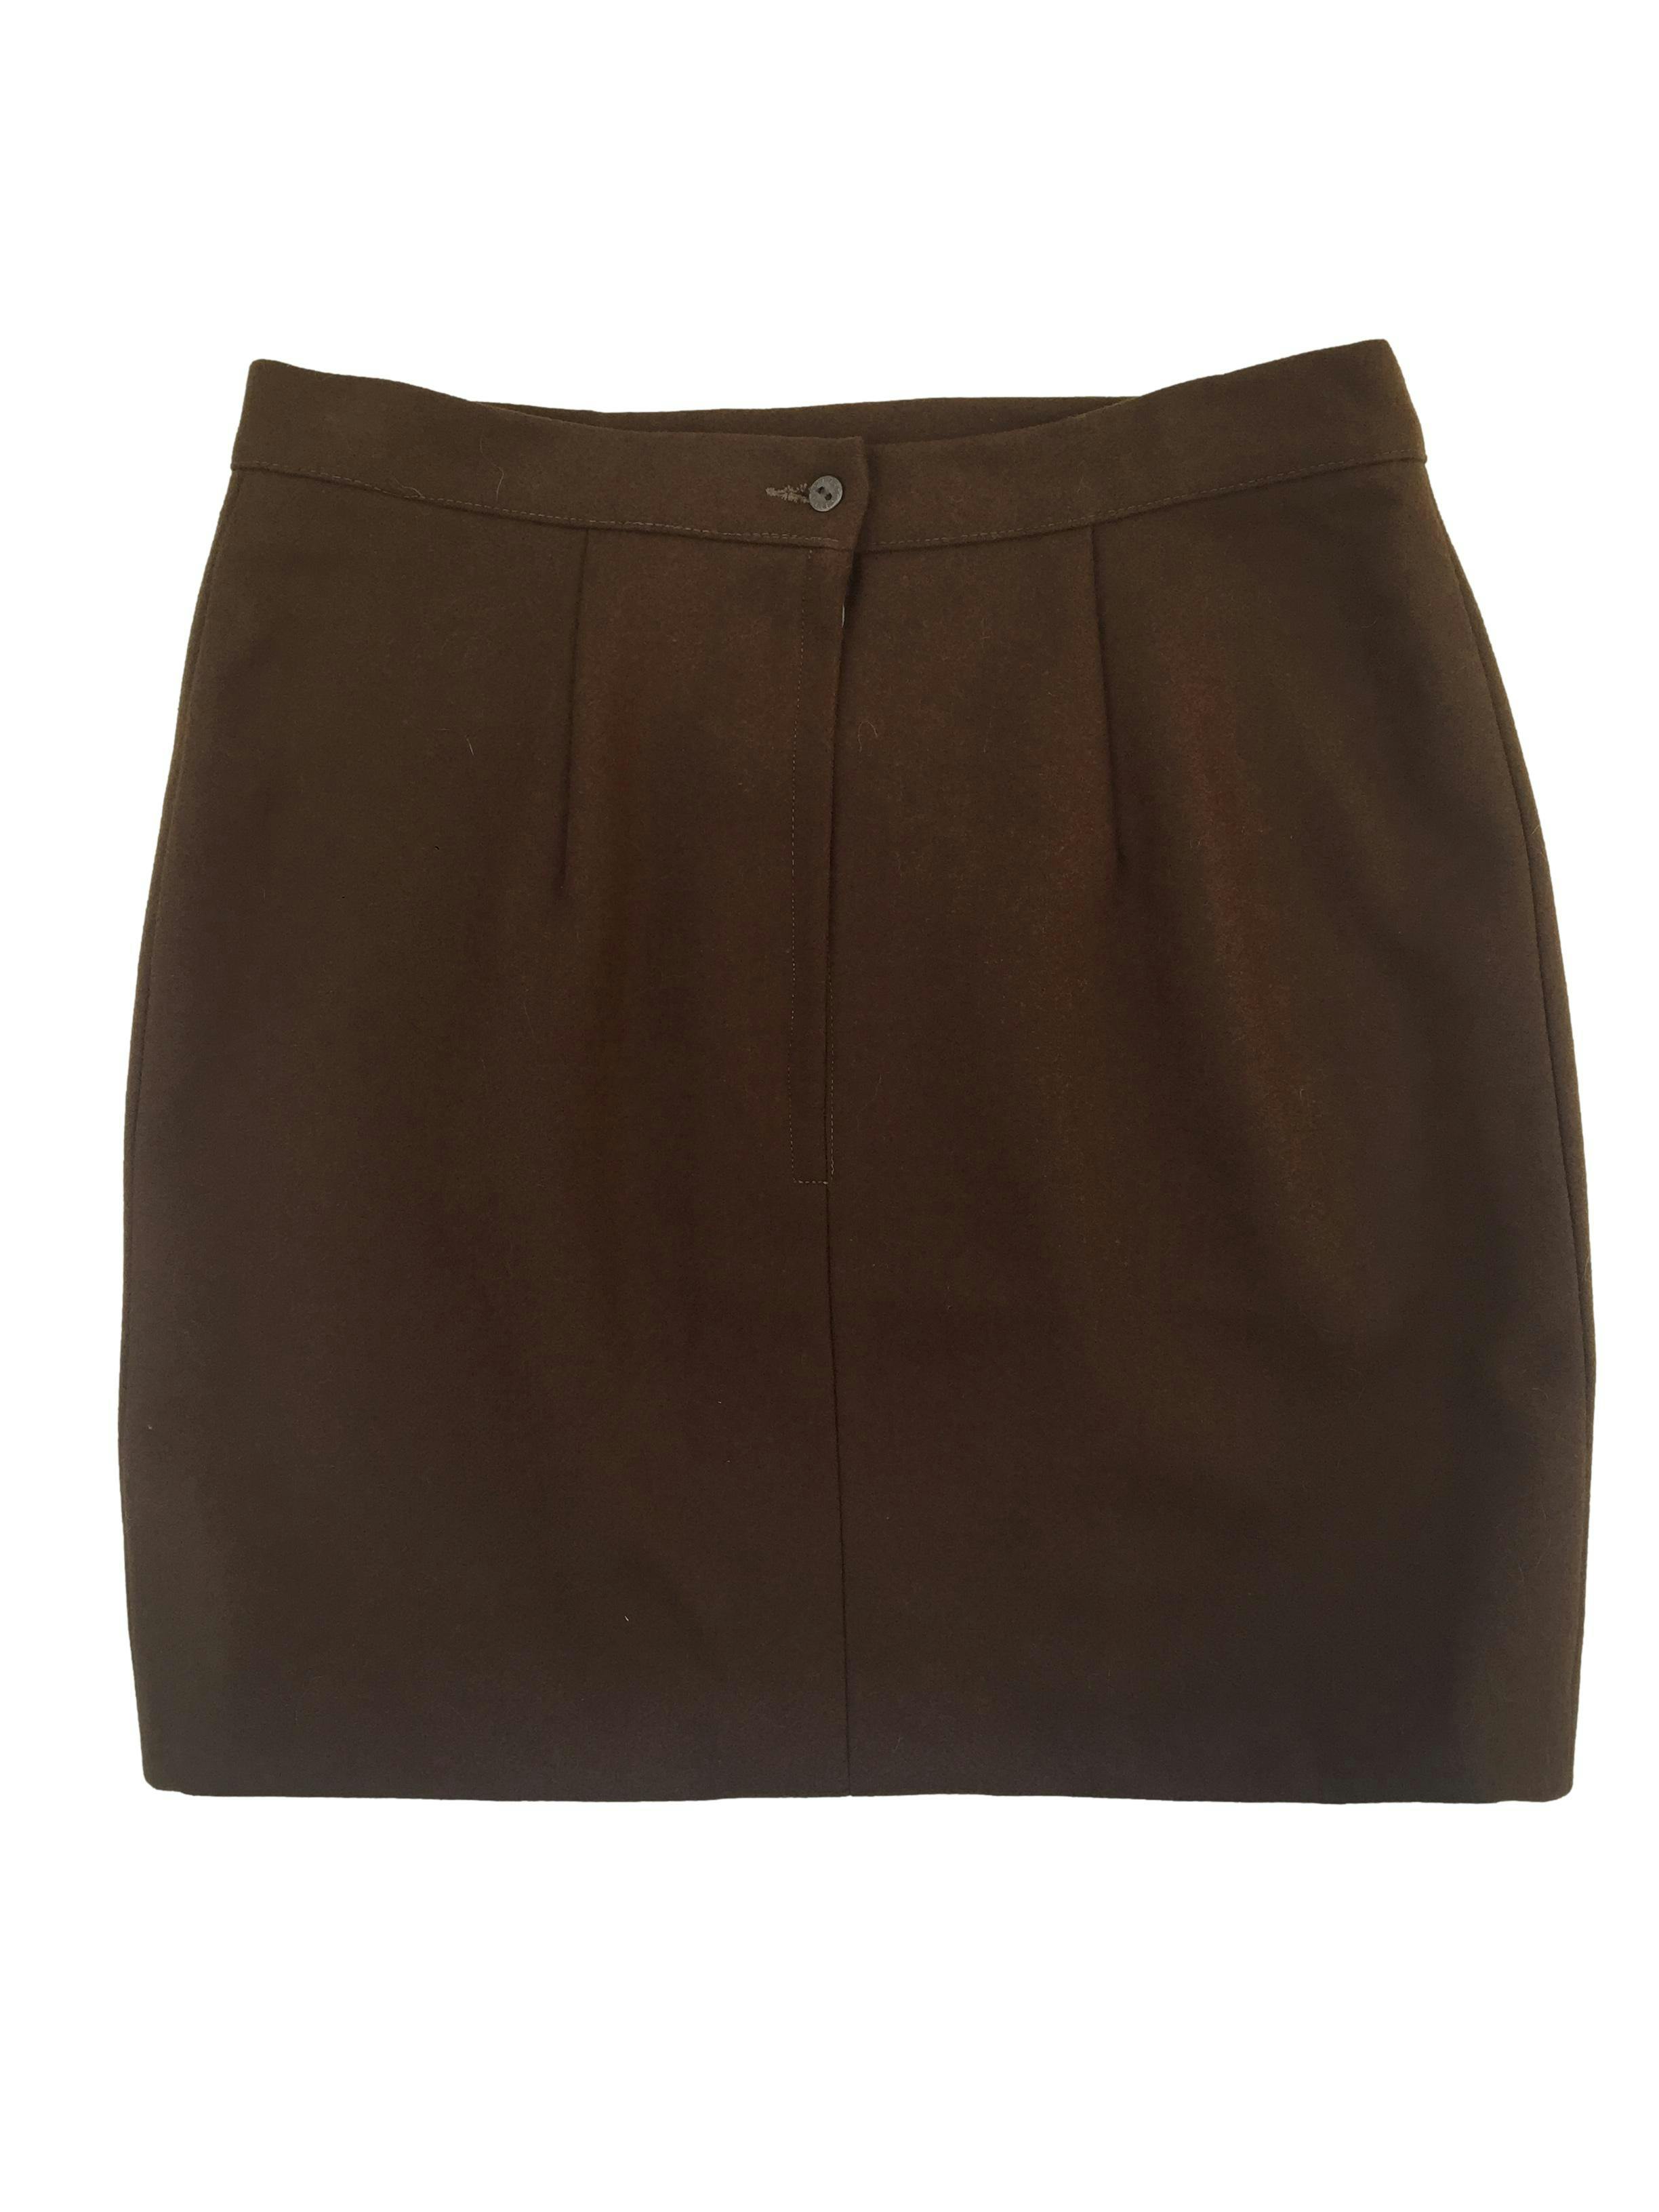 Falda mini de paño color marrón, tiene pinzas,cierre posterior y aberturas frontales. Cintura 78cm, Largo 45cm.